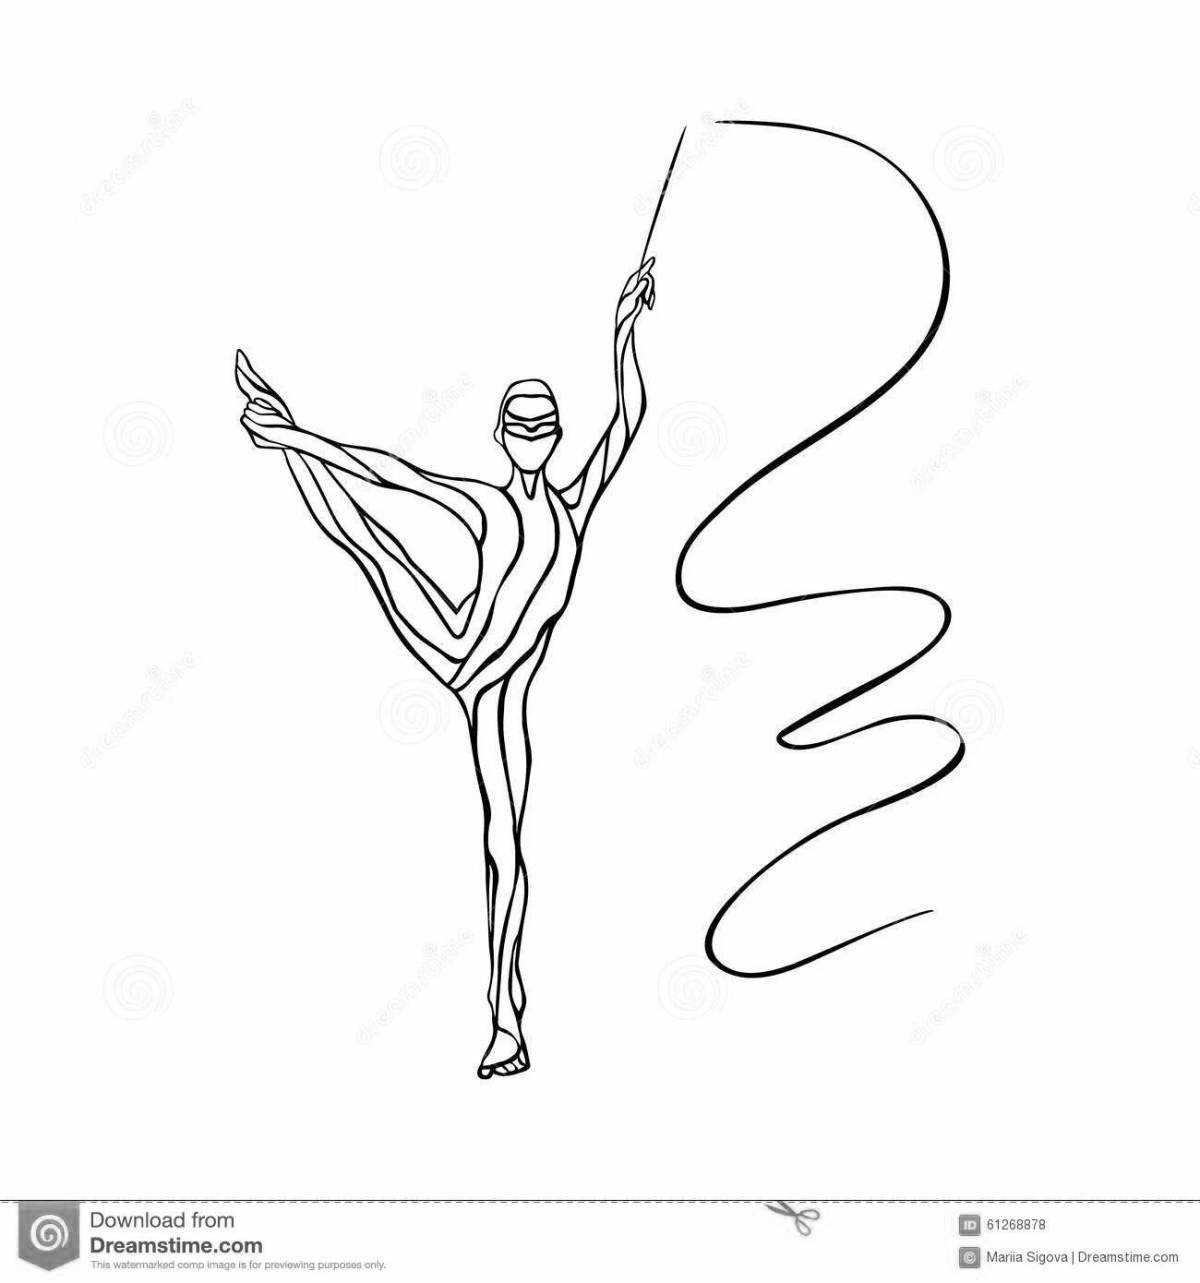 Динамическая гимнастка с лентой